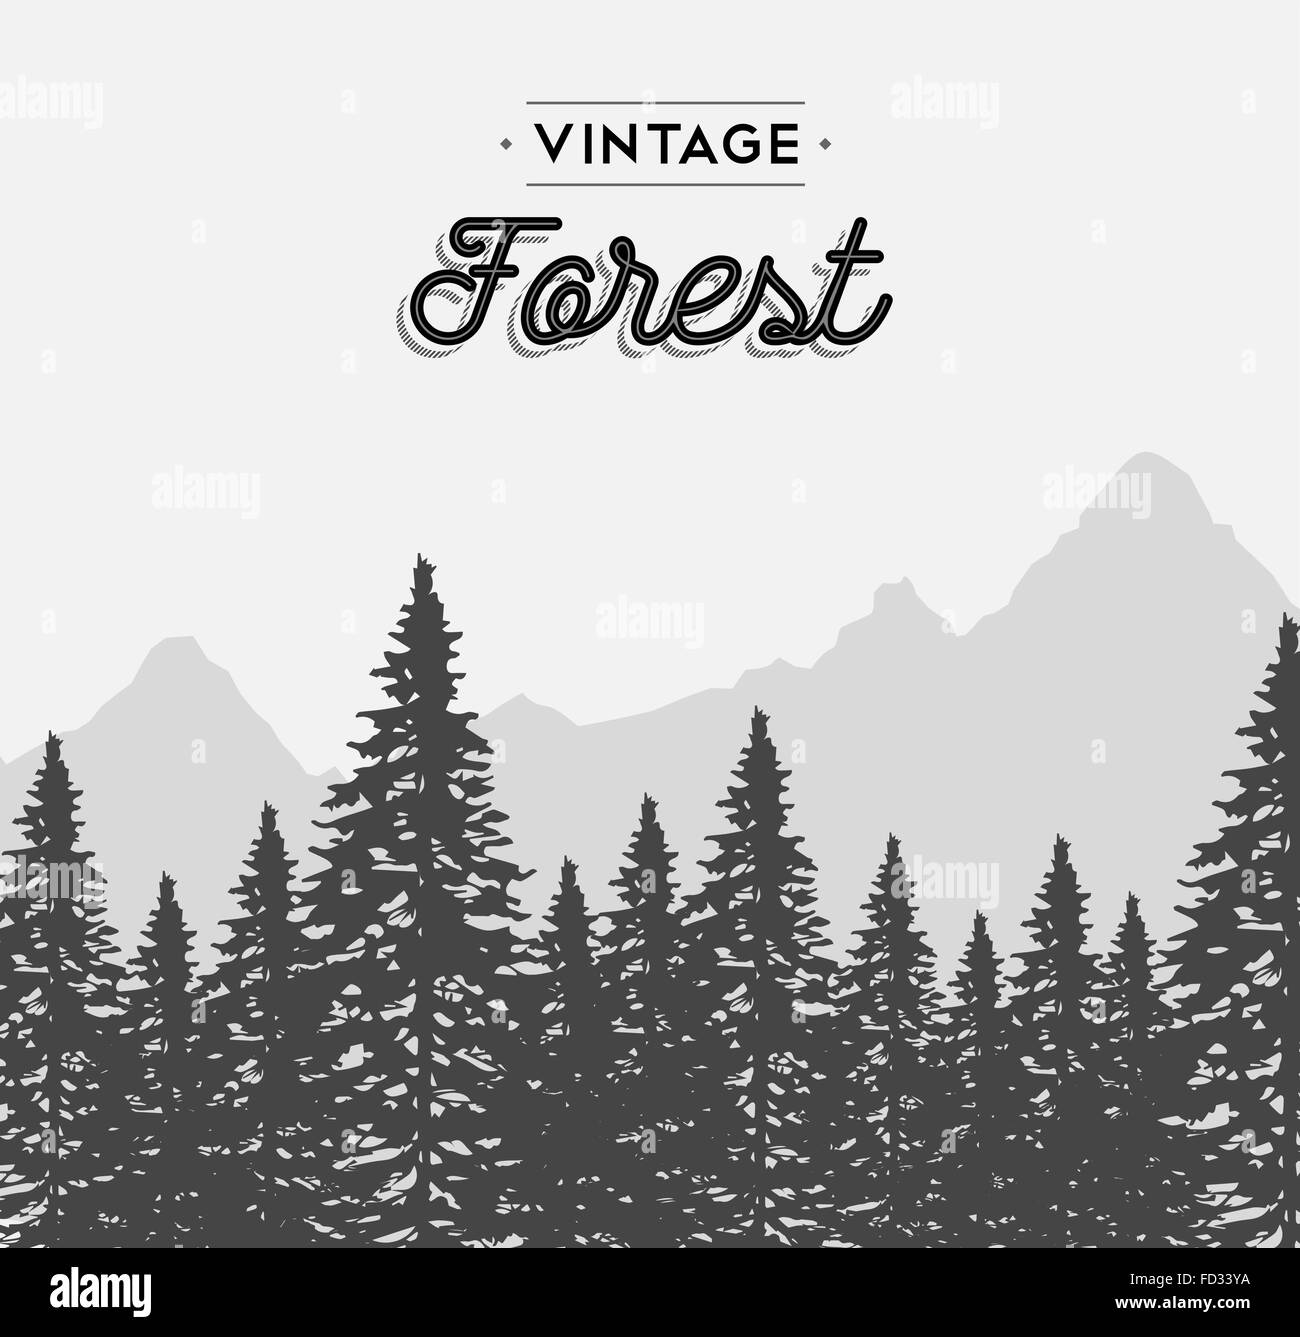 Concept de forêt Vintage Retro illustration avec texte et arbre hiver paysage. Vecteur EPS10. Illustration de Vecteur